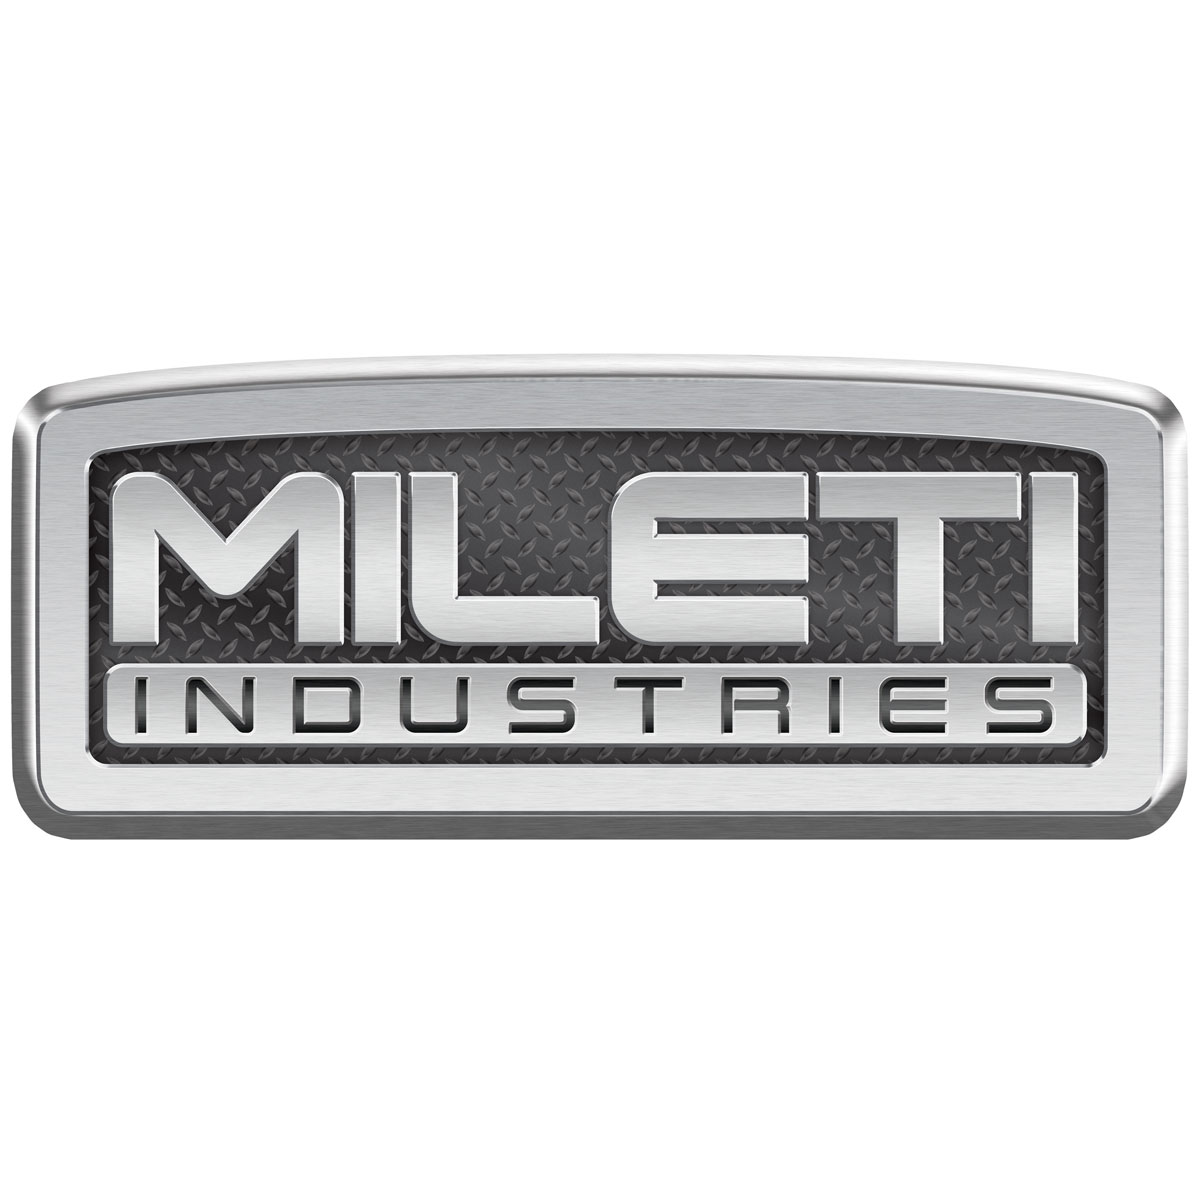 Mileti Industries